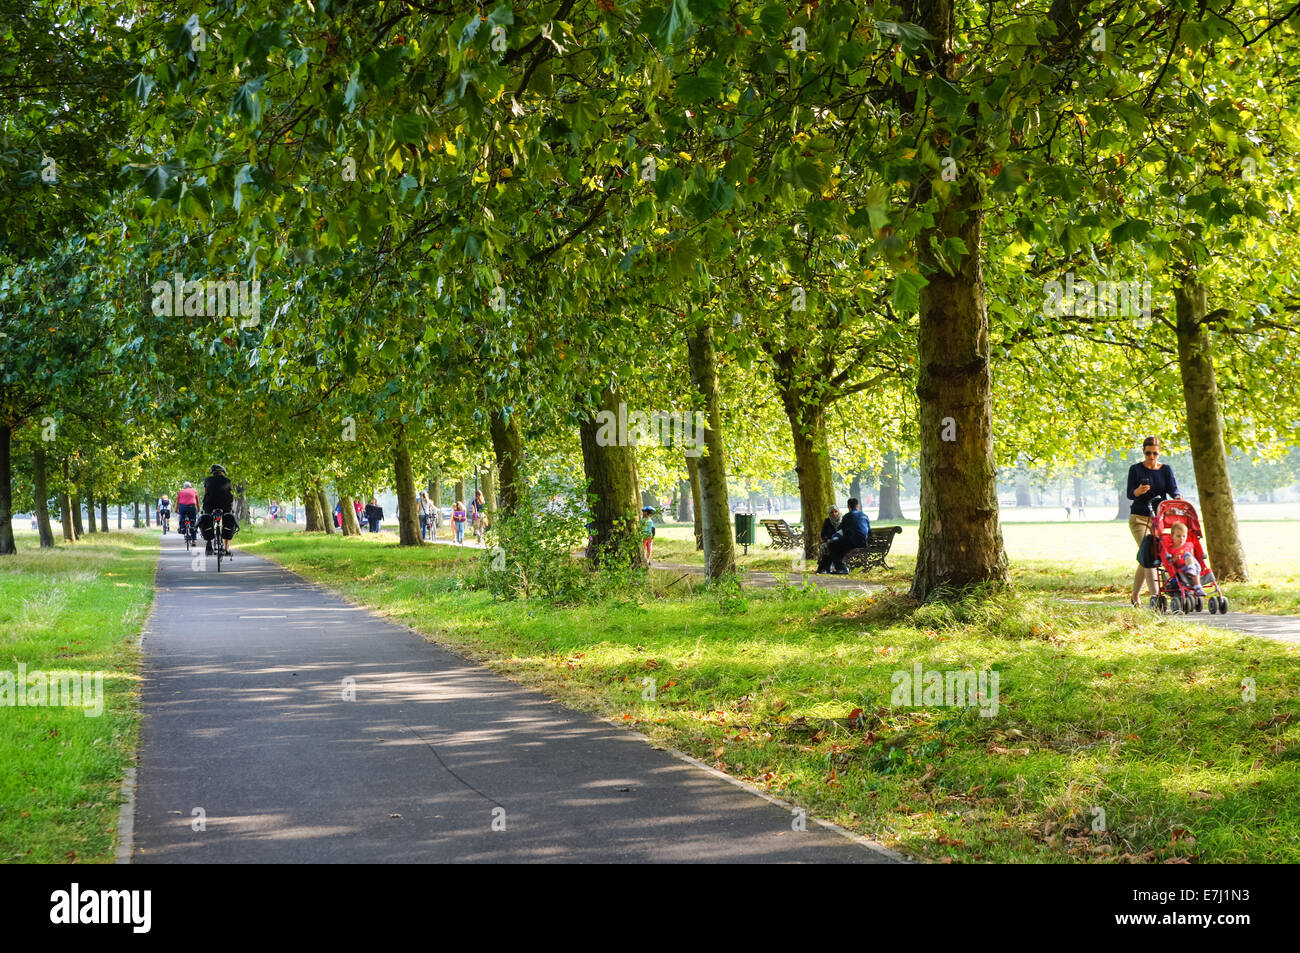 Les visiteurs à Clapham Common Park dans le sud de Londres Angleterre Royaume-Uni UK Banque D'Images